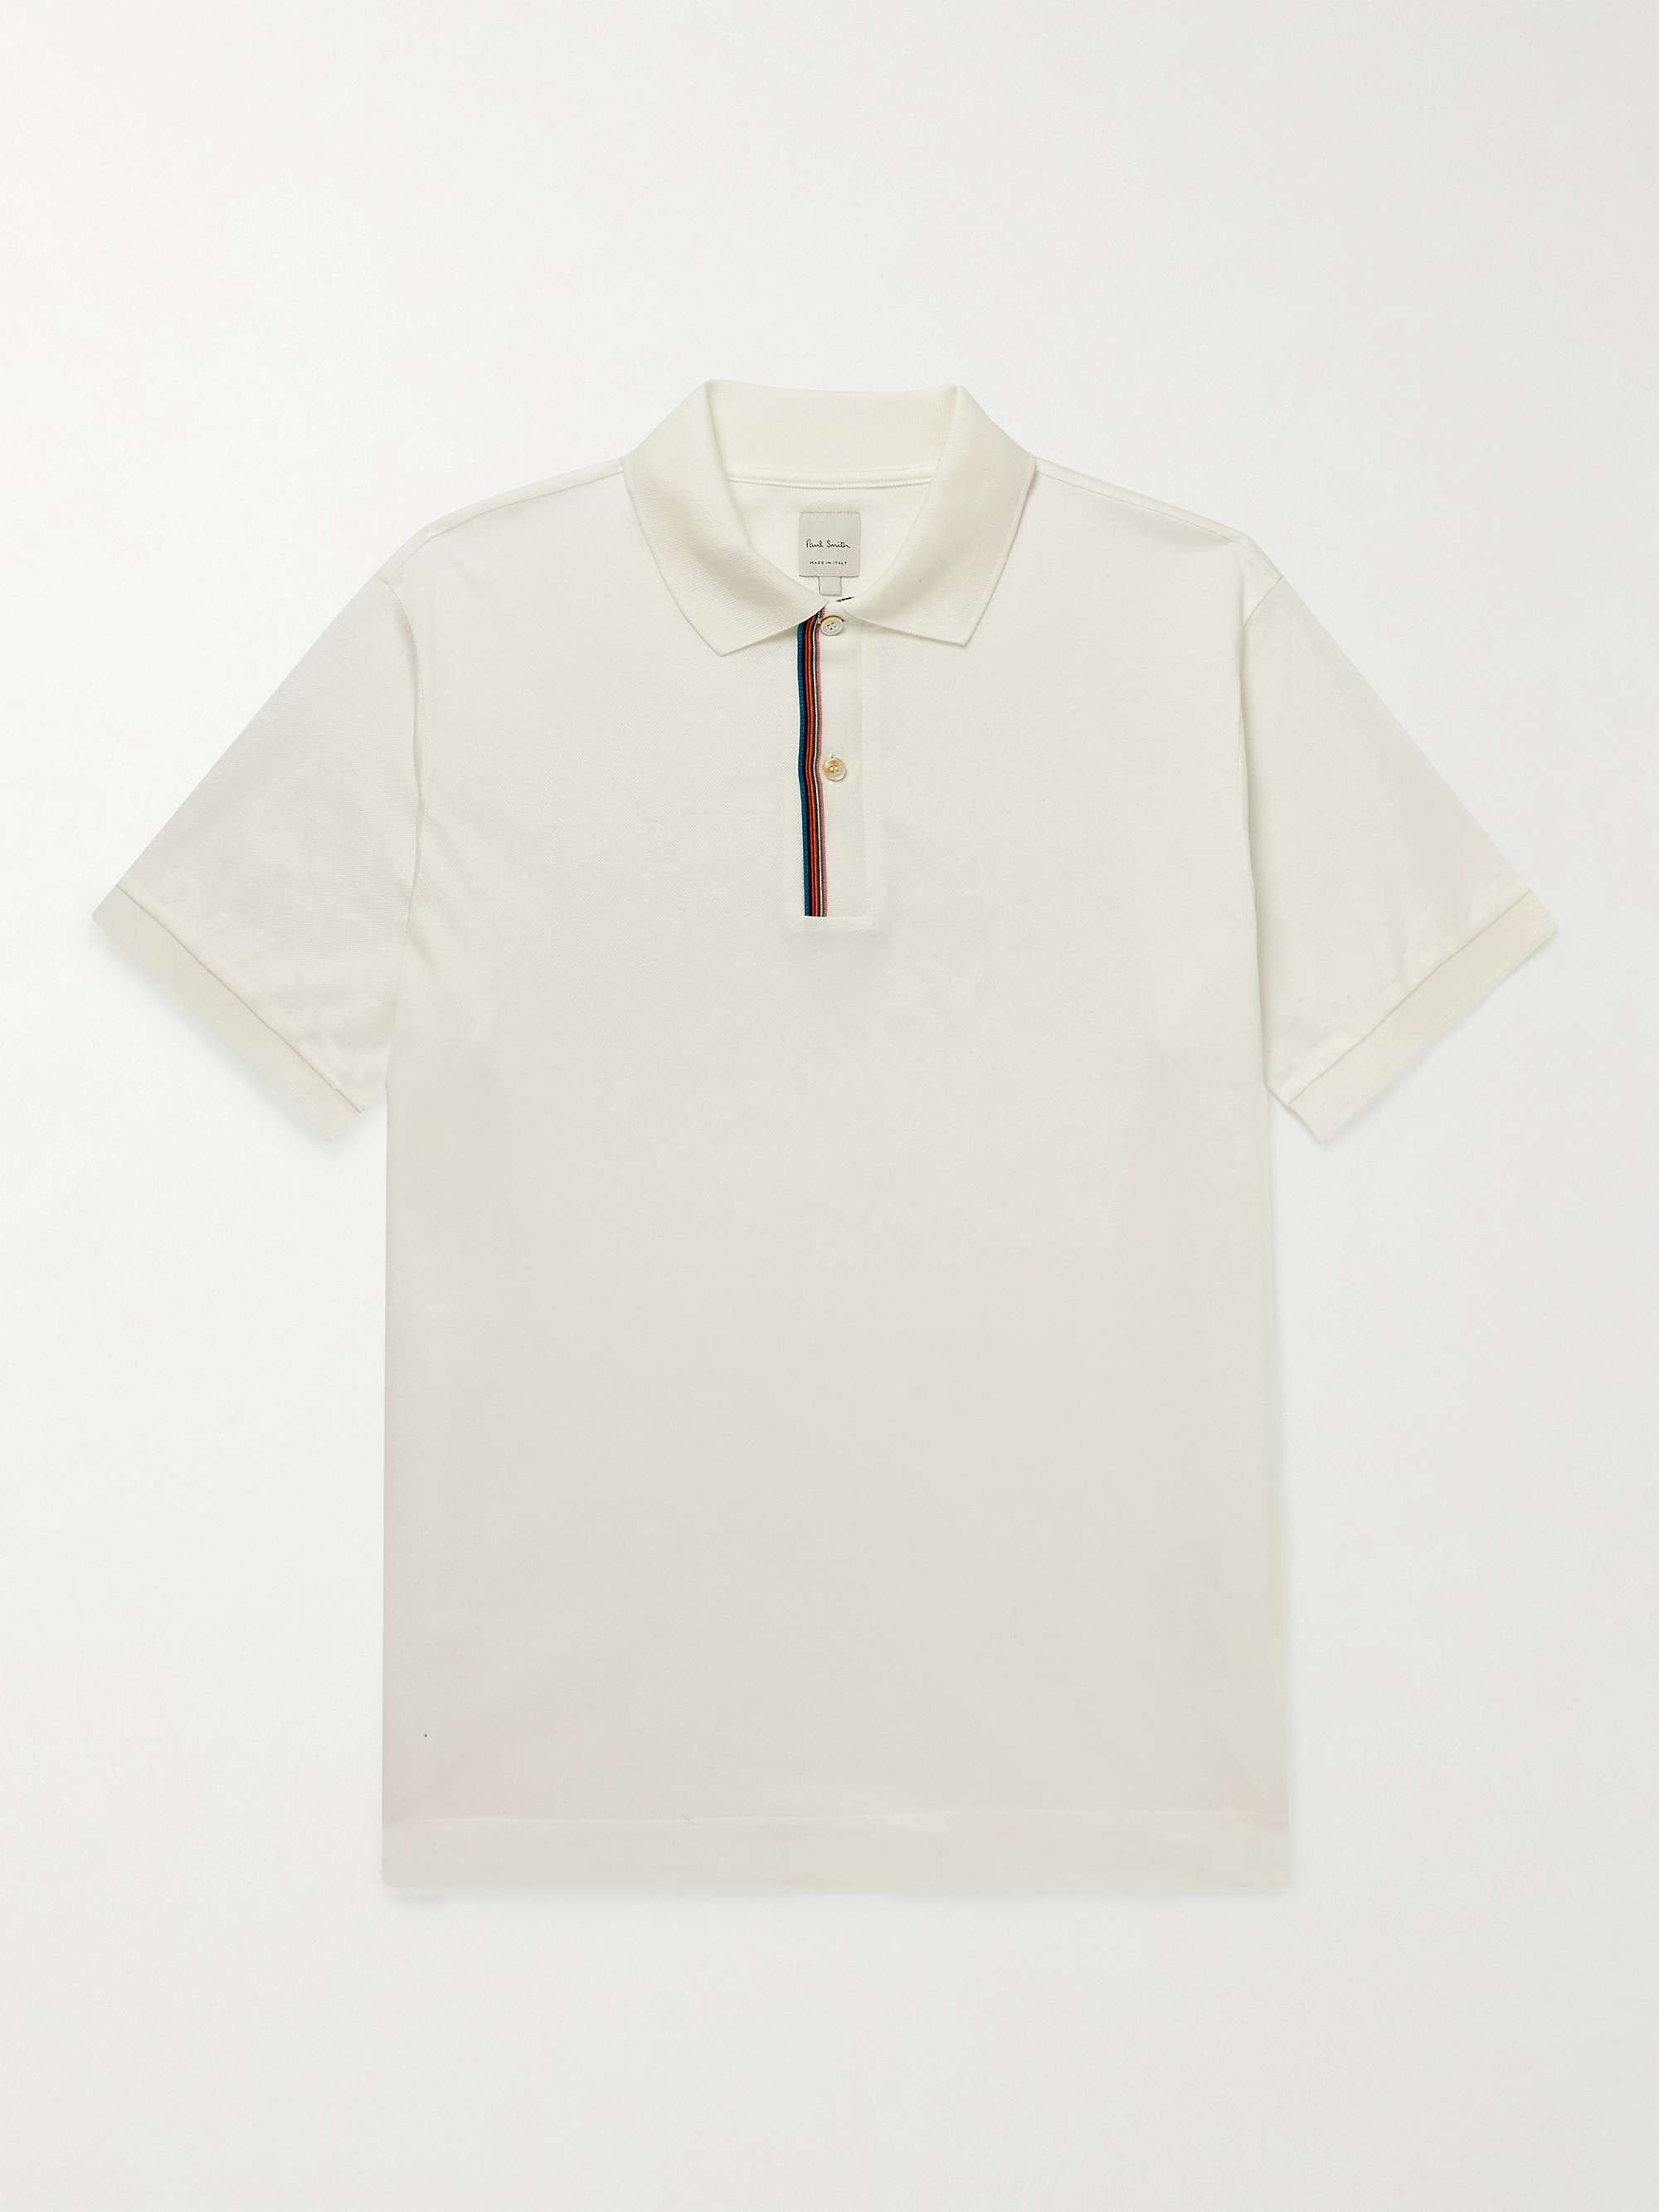 PAUL SMITH Striped Cotton-Piqué Polo Shirt